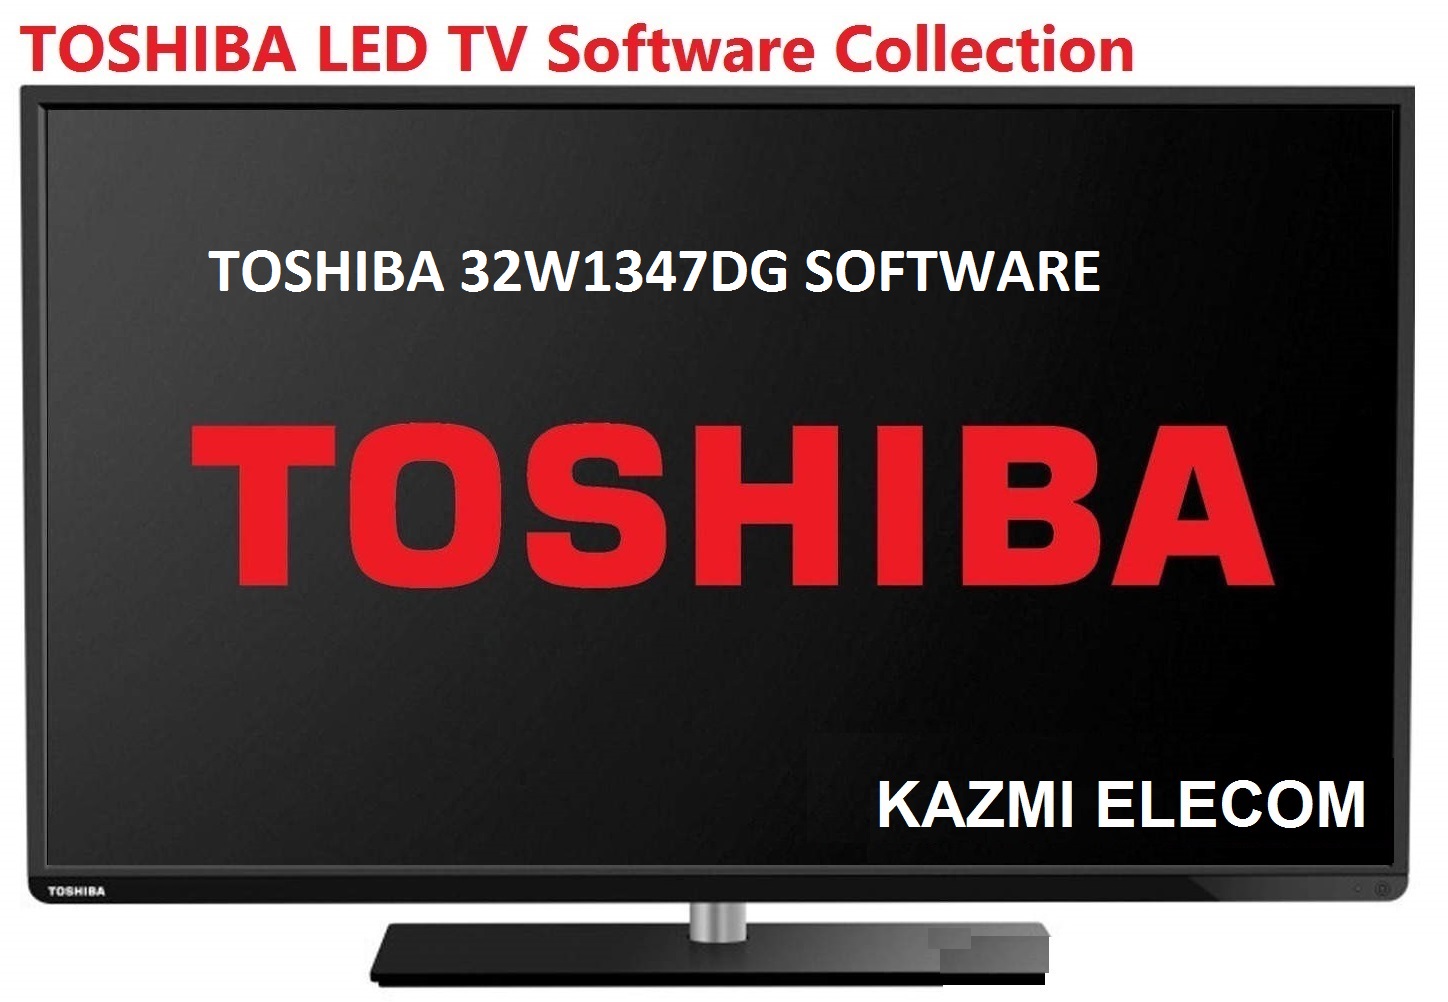 Toshiba 32W1347Dg